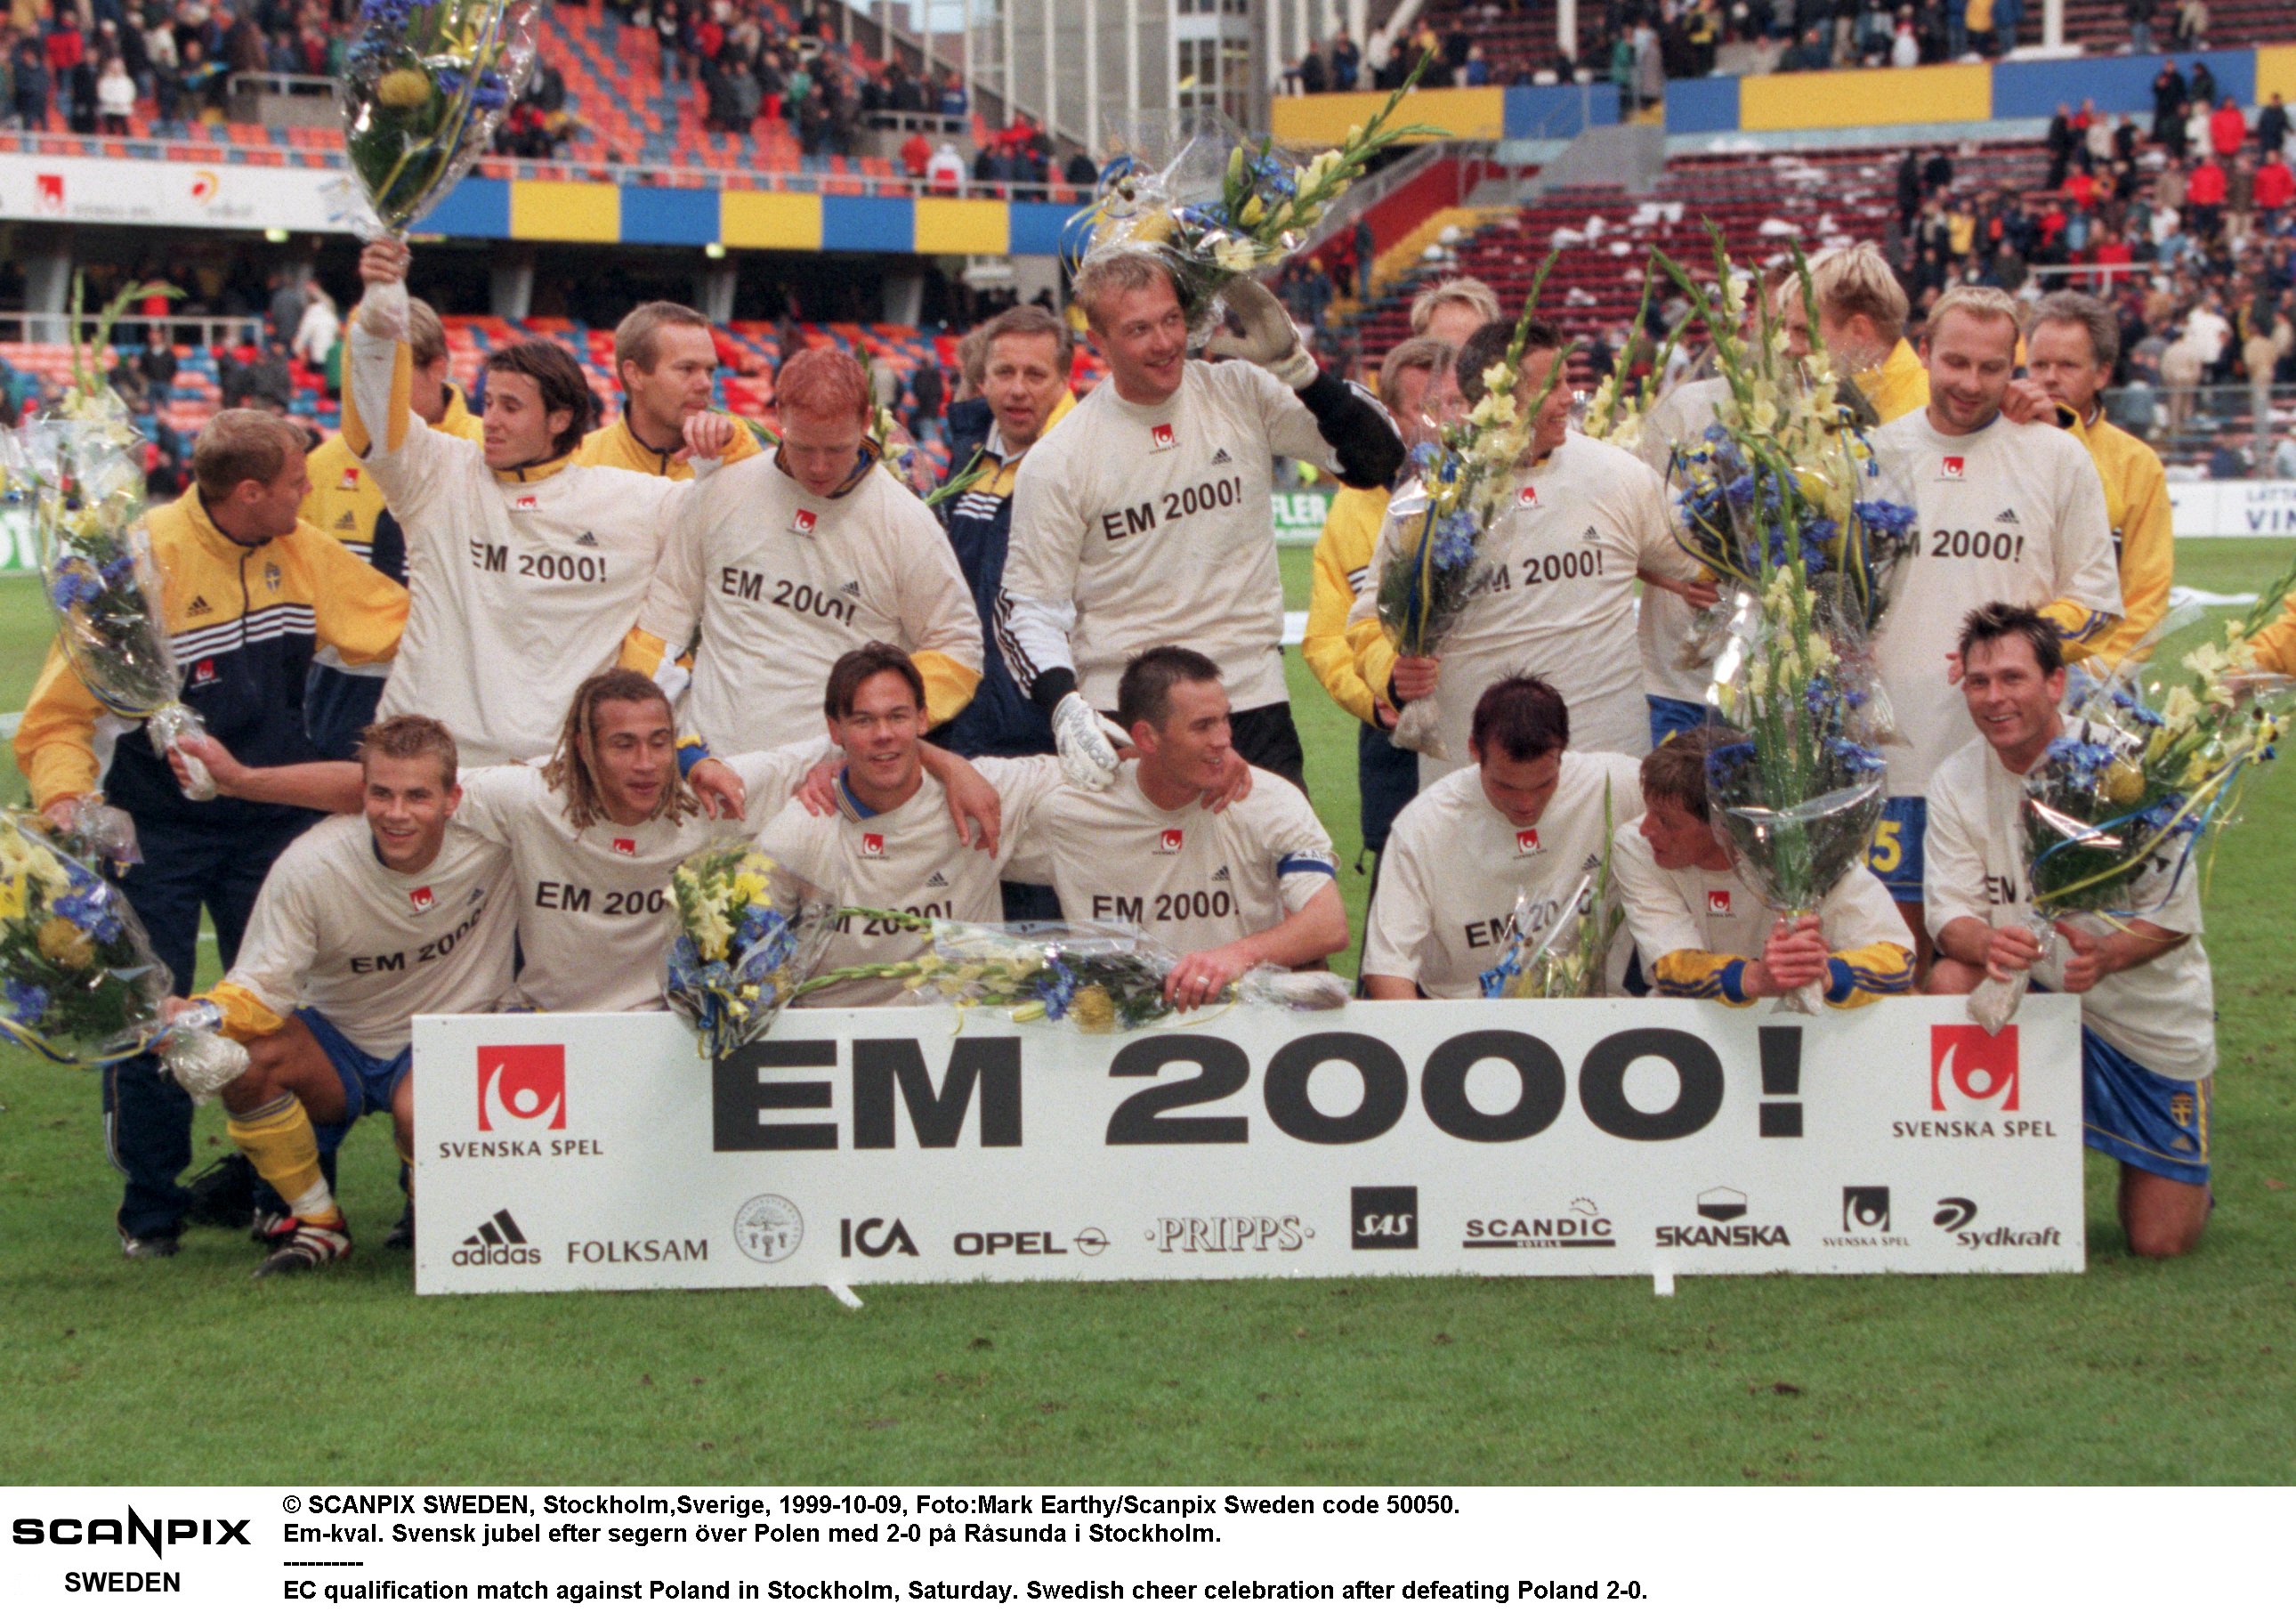 Lugnet innan stormen, festen innan pesten. Det svenska landslaget firade avancemang till EM-slutspelet 2000. Ett mästerskap där svenskarna tillsammans med Turkiet stod för den absolut tråkigaste fotbollsmatchen som spelats i ett stort mästerskap.